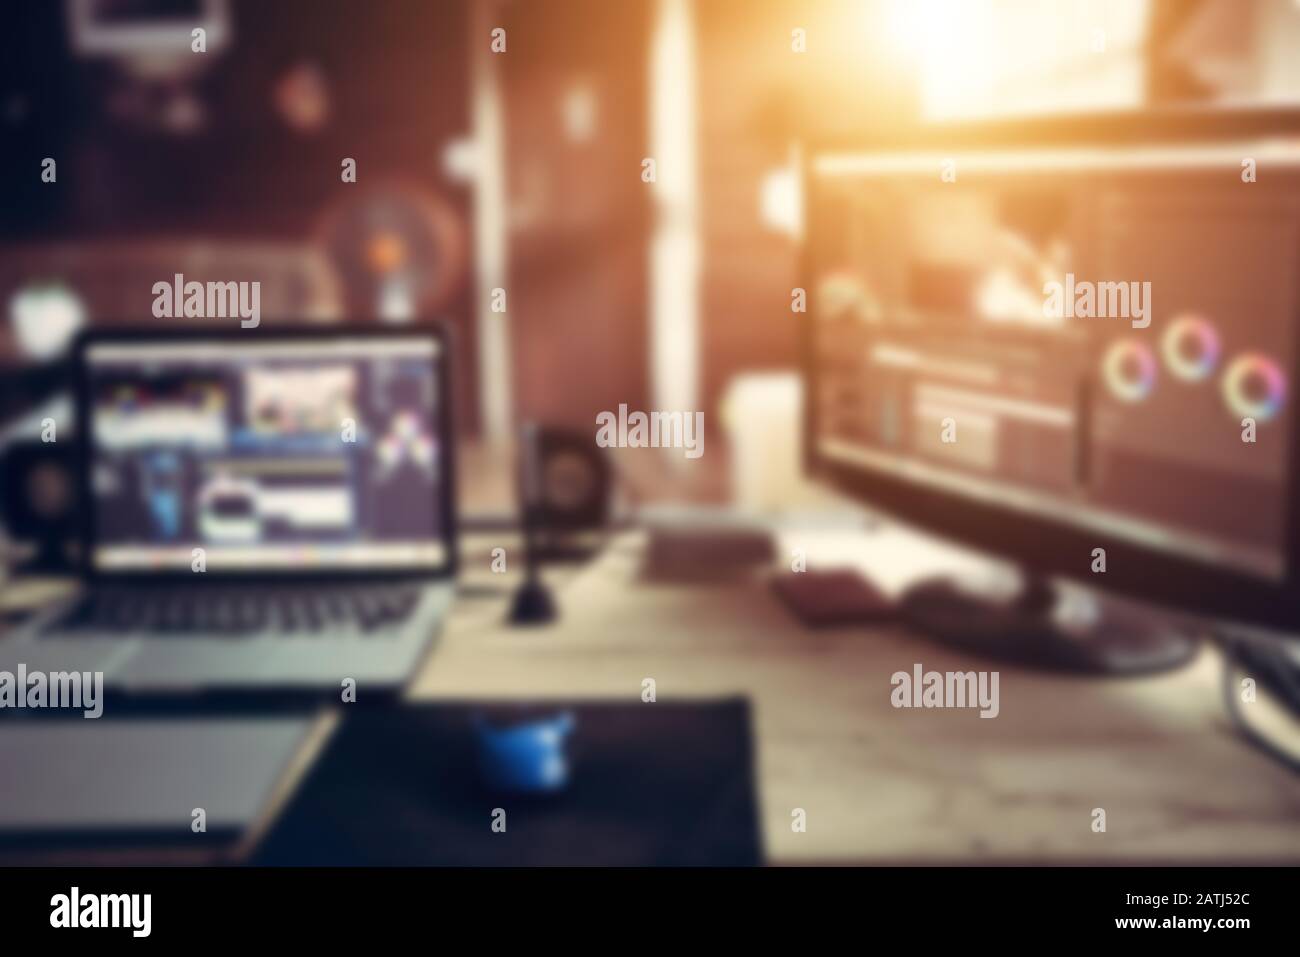 Il computer desktop e portatile freelance l'apparecchiatura vlog o blogger per creare contenuti online sui social media. Foto Stock